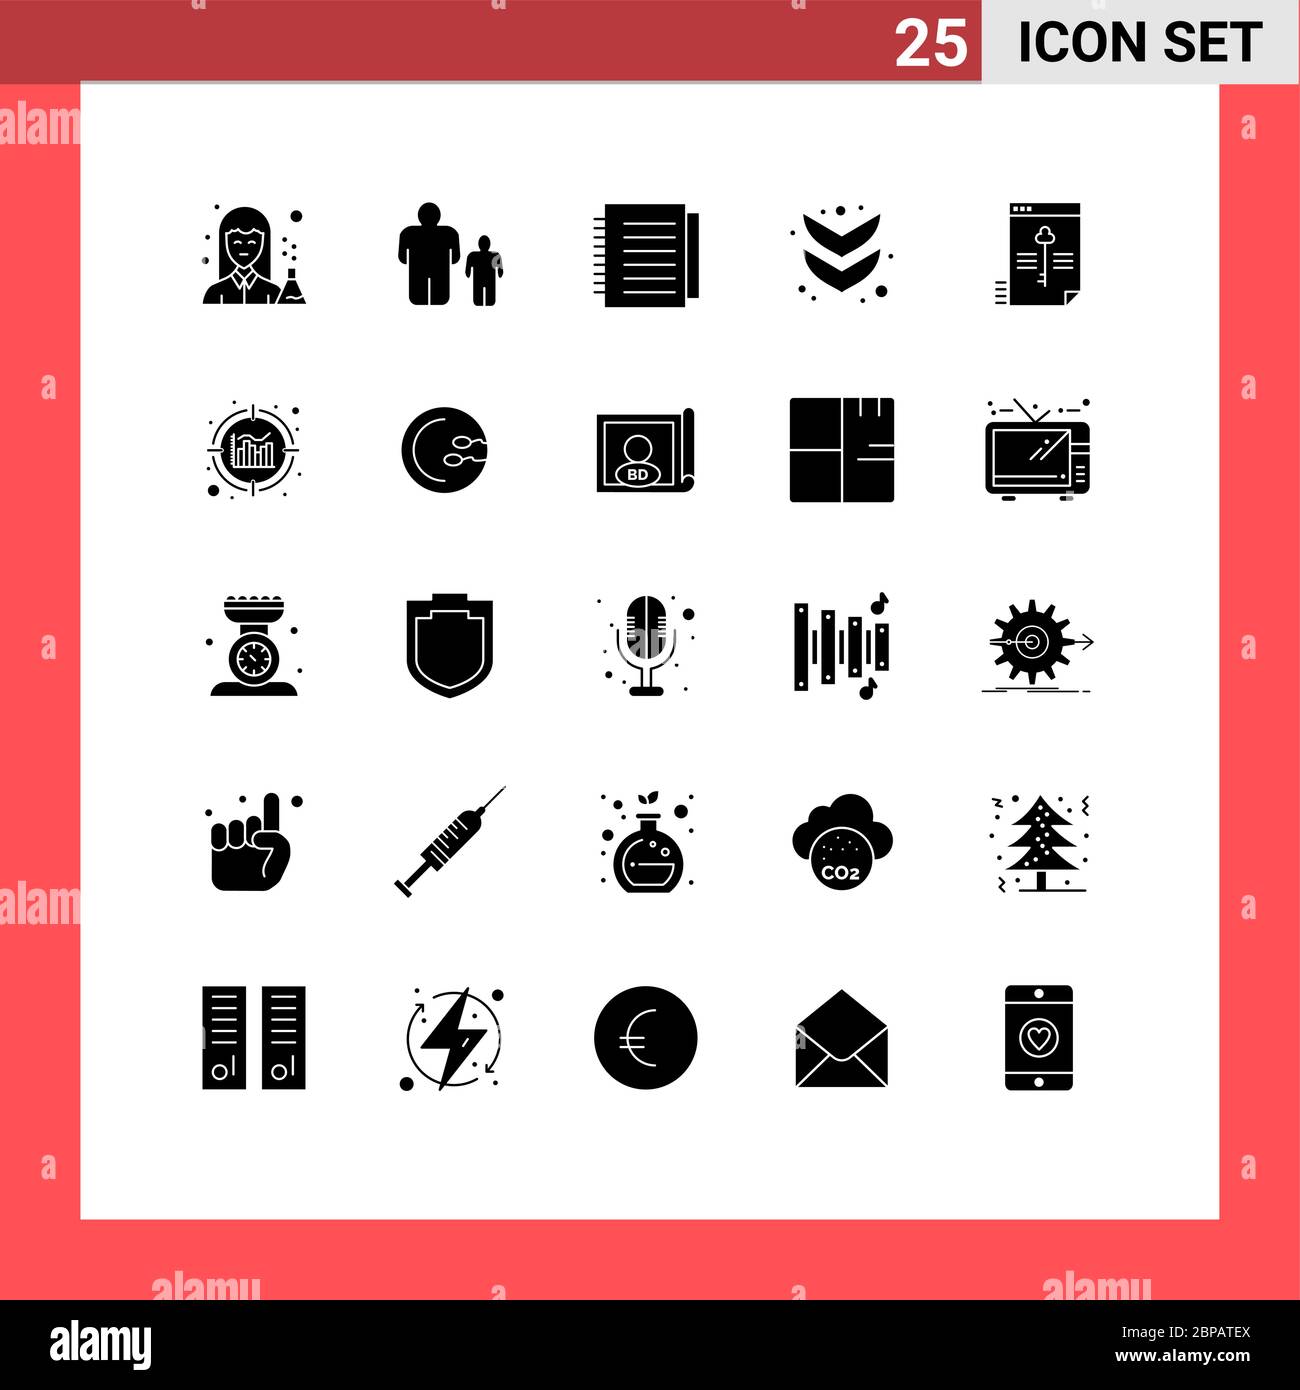 25 interfaccia utente Solid Glyph pacchetto di segni e simboli moderni di elementi di progettazione vettoriale sicuri, completi, con controllo genitori, Down, cartacei Illustrazione Vettoriale